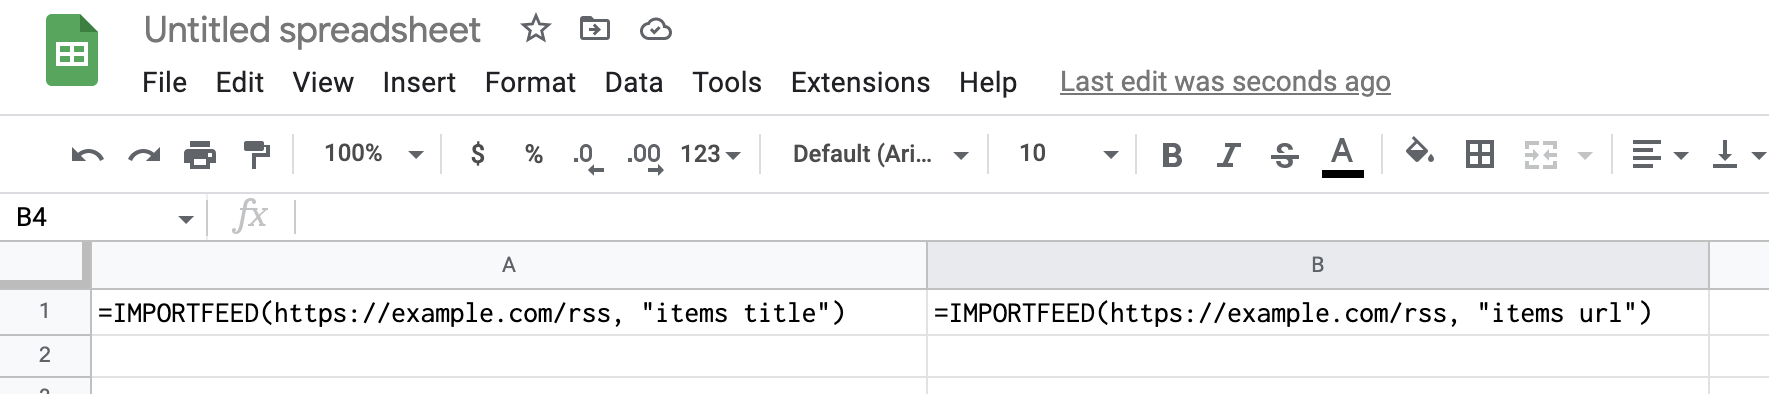 Importando feeds rss para o Excel através do Google Sheets